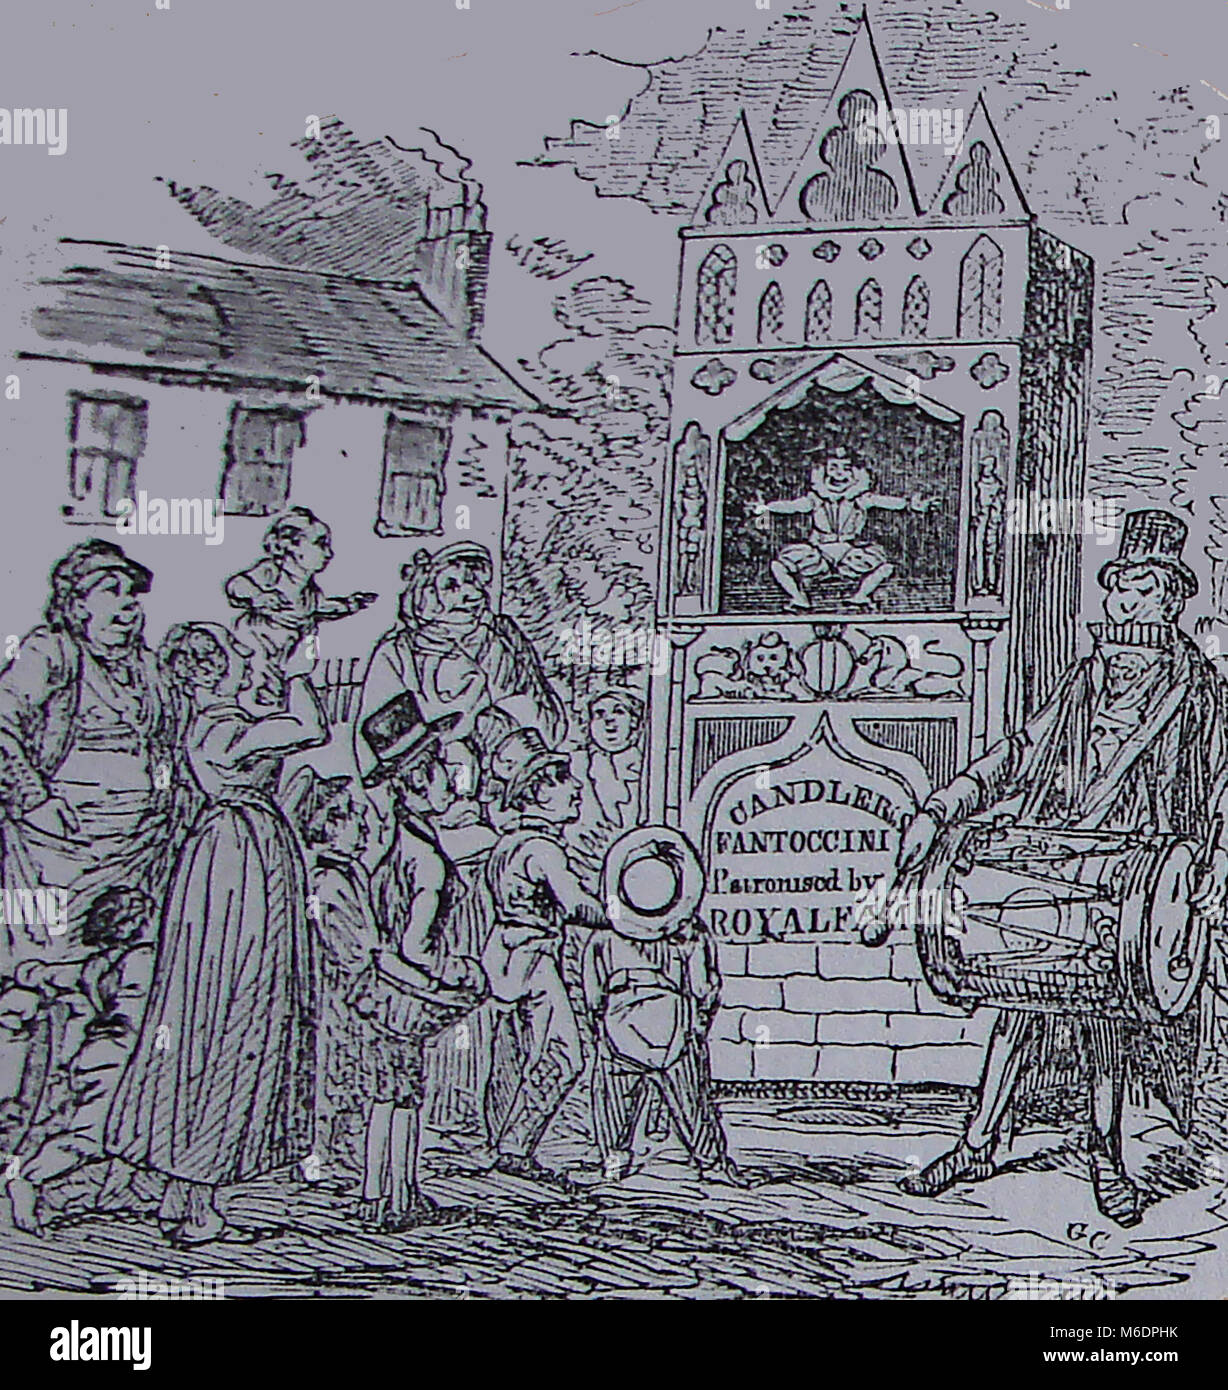 Candler Fantoccini ou spectacle de marionnettes de rue (généralement à l'aide des marionnettes articulées exploités par des chaînes ou des tiges de dispositifs mécaniques) similaire à 'Punch & Judy' - Pentonville, Londres en 1825 Banque D'Images